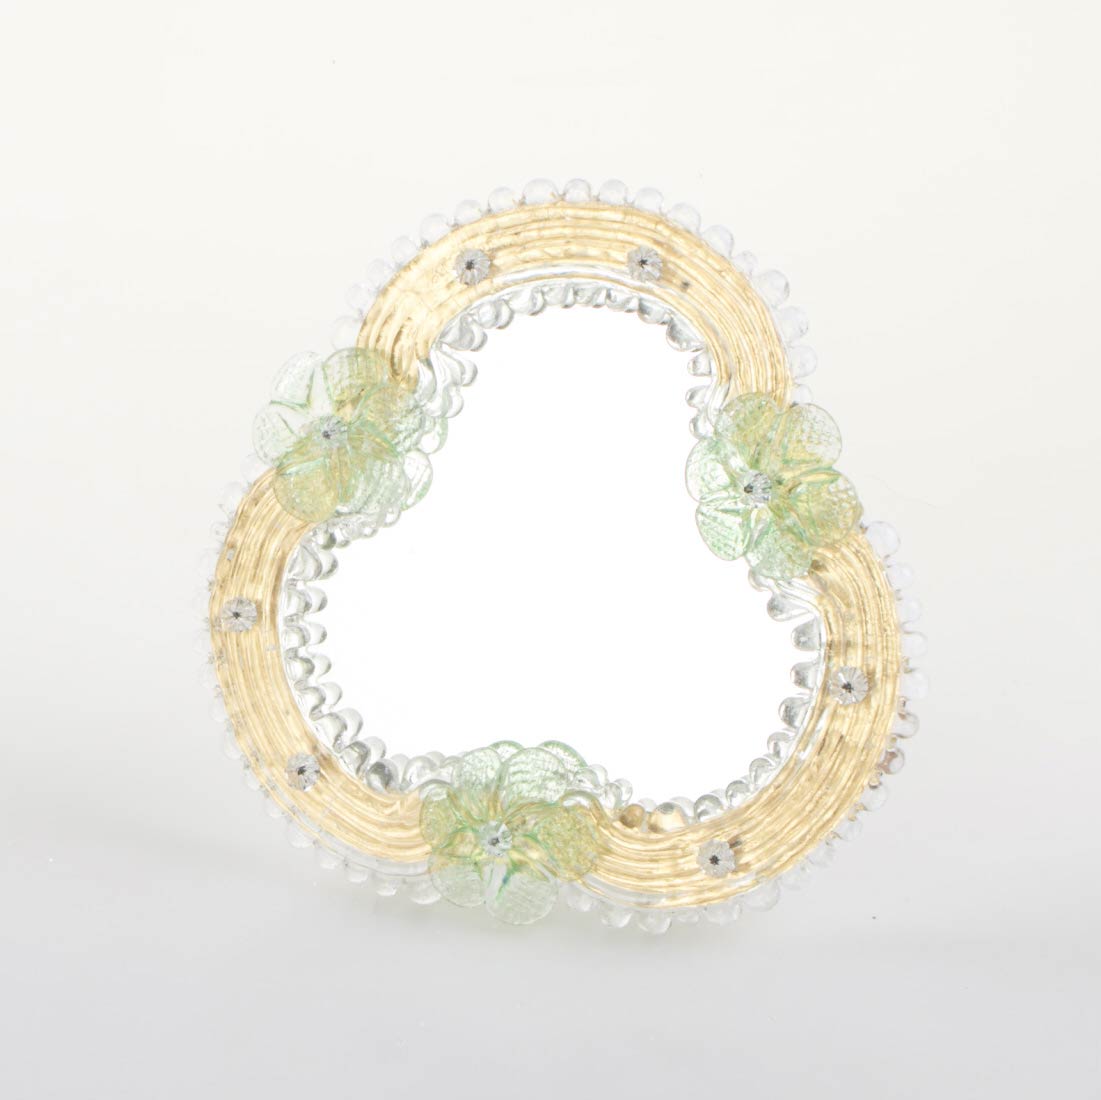 Piccolo specchio artigianale da tavolo "Camelia" con riflessi Oro e dettagli floreali di colore verde